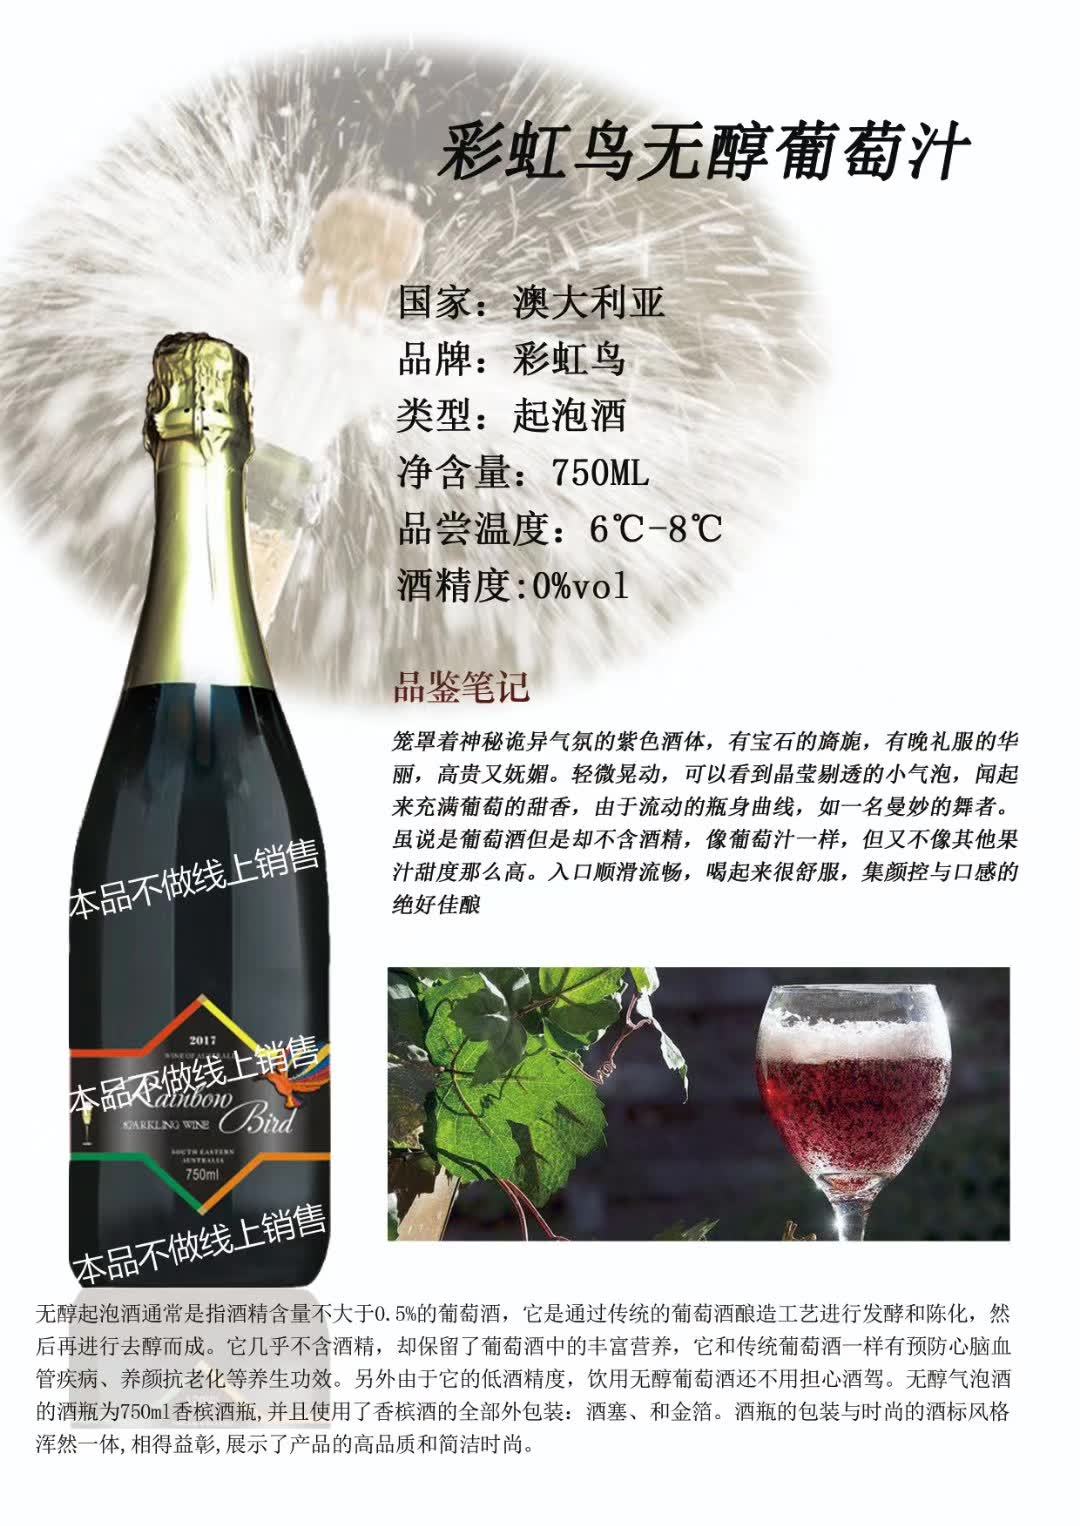 上海万耀澳洲进口彩虹鸟系列无醇葡萄汁饮料酒网红选品